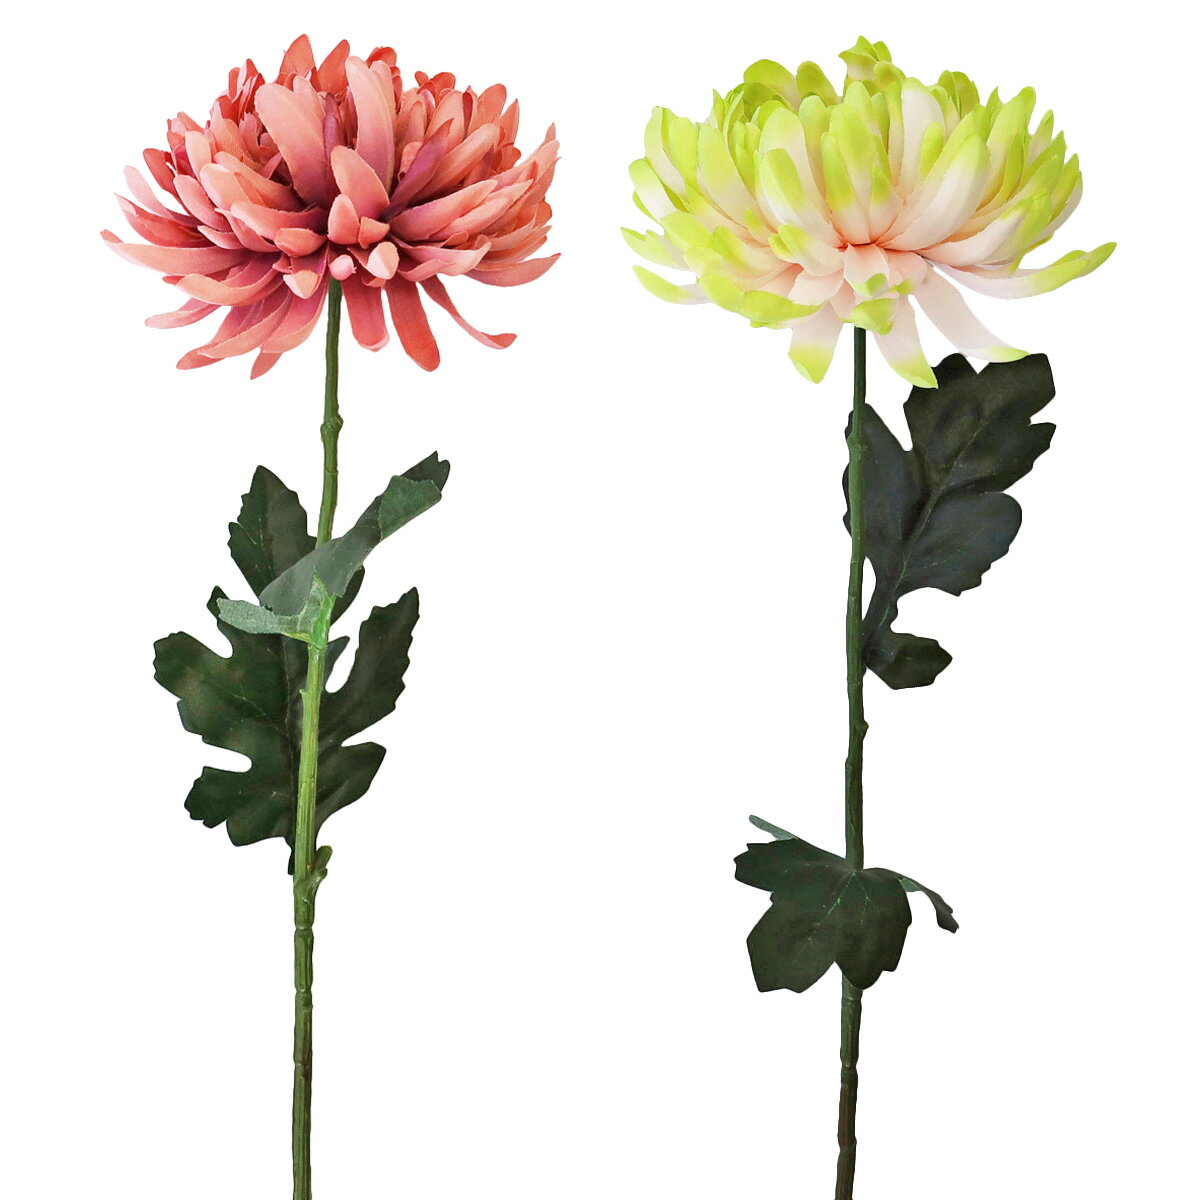 かわいらしい大和菊のスプレーです。 ＊タイプA(パープル)またはタイプB(グリーンピンク)からお選びください。 シルクフラワーなので美しいまま長期間飾ることができ、水遣りも不要で、季節を問わず翌年以降もお使いいただけます。サイズ：約長さ60cm・花径約10cm※花器は付属しておりません＊商品の仕様は変更になる場合がございます ＊茎部分のカットも承ります。ご注文時にご希望の長さを備考欄へご記入ください。 　（サイズや材質、形状によってカット出来ない場合もございます。予めご了承下さい） シルクフラワーとは、シルクの様な光沢のある生地を用いて作られ、 生花のような花びらのグラデーション・葉や茎の樹皮や節までリアルを追求した高品質な人工的な花のことをいいます。 他にも、一般的な造花を指すアートフラワーと呼ばれることもあります。 また、近年では呼び名が統一され、生花の代わりとなる人口的な花のことを全てまとめてアーティフィシャルフラワーと呼ばれる様になりました。 シルクフラワーのグレードアップアイテム♪ お部屋の防臭・防汚抗菌作用も CT触媒リキッド200mlボトル 初めての方専用是非お試しください お任せグリーンアレンジ 1本でアレンジ約1つ分お試しサイズ50ml CT触媒リキッド50mlボトル